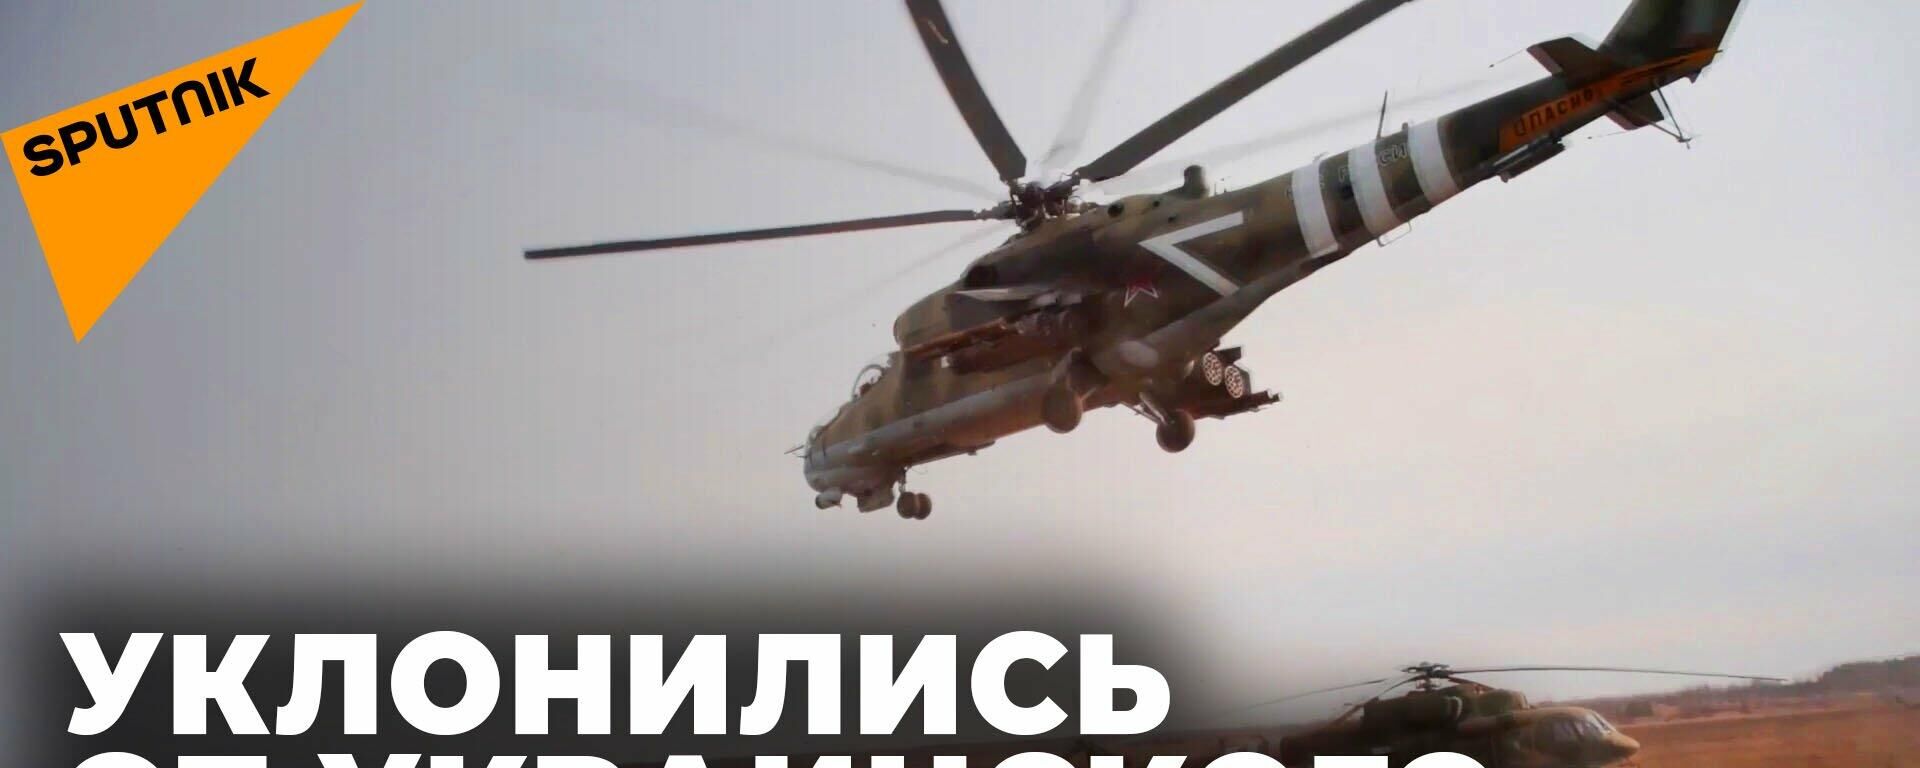 Rusiško Mi-24 įgula išsigelbėjo nuo Ukrainos ginkluotųjų pajėgų raketos - Sputnik Lietuva, 1920, 21.03.2022